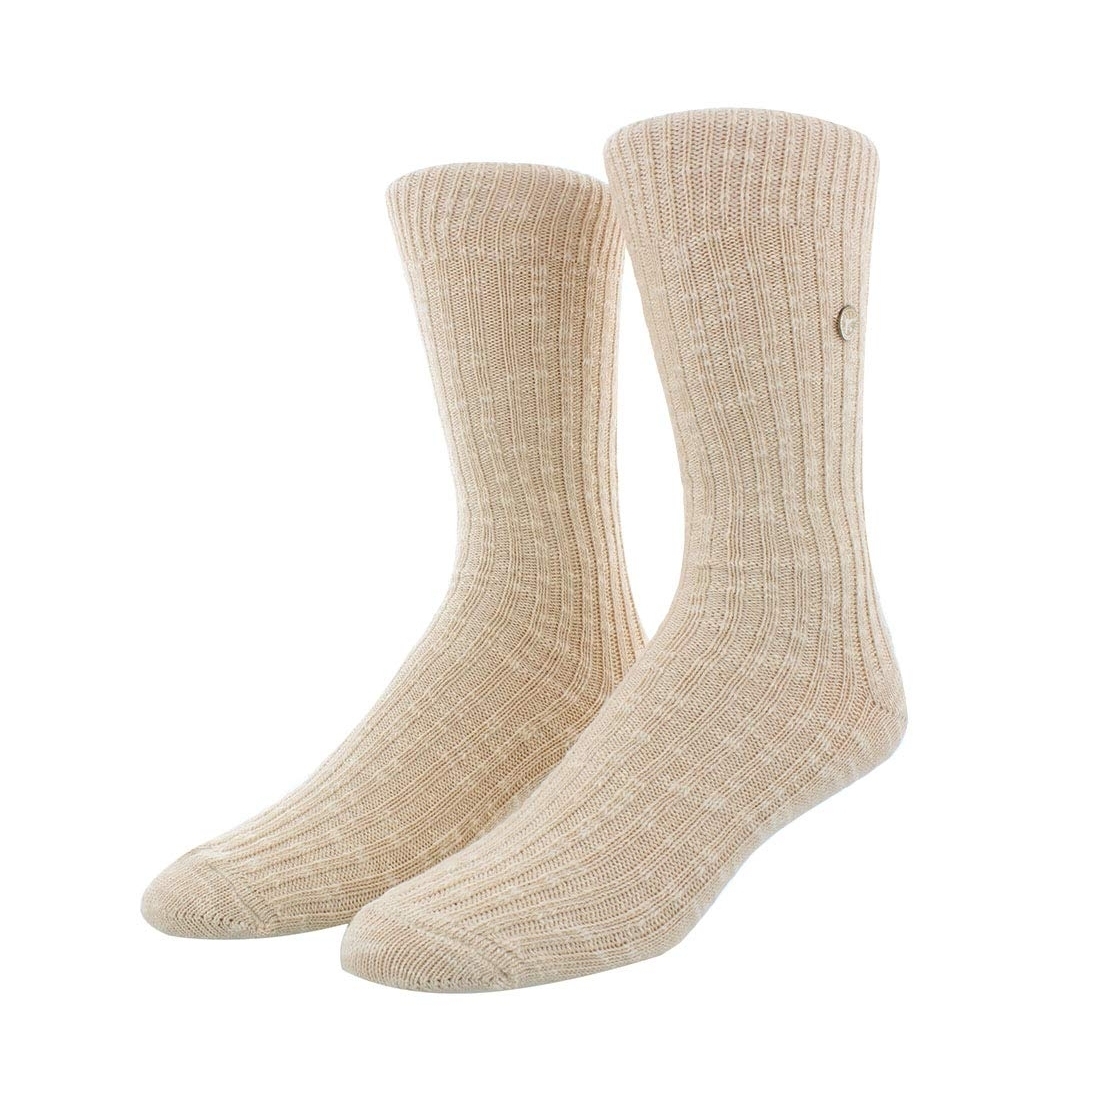 BIRKENSTOCK Men's Cotton Slub Socks Beige - 1008061 BEIGE - BEIGE, 14-14.5 Women/12-12.5 Men